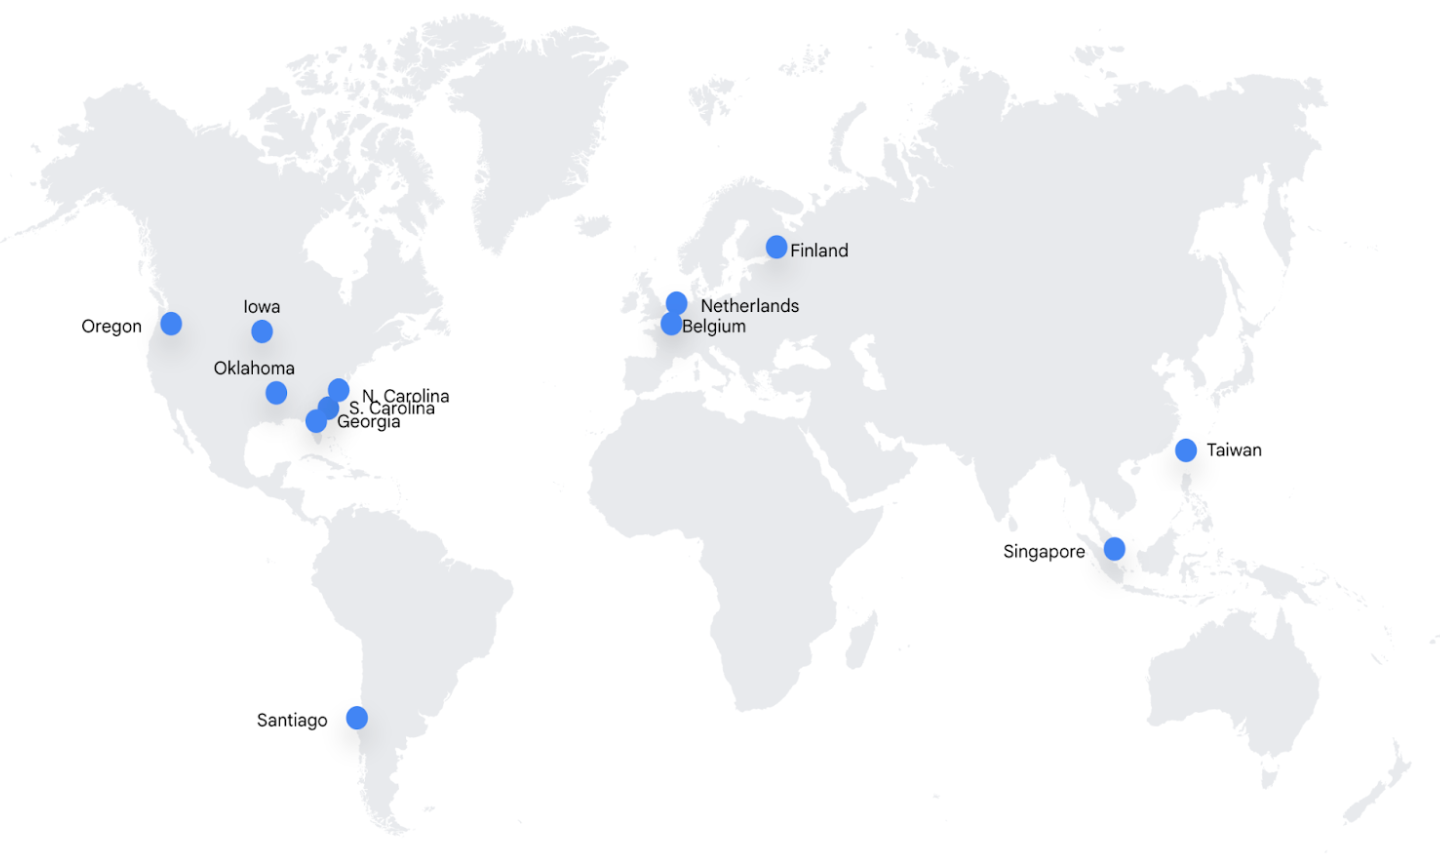 Carte du monde sur laquelle les centres de données sont indiqués par des points bleus